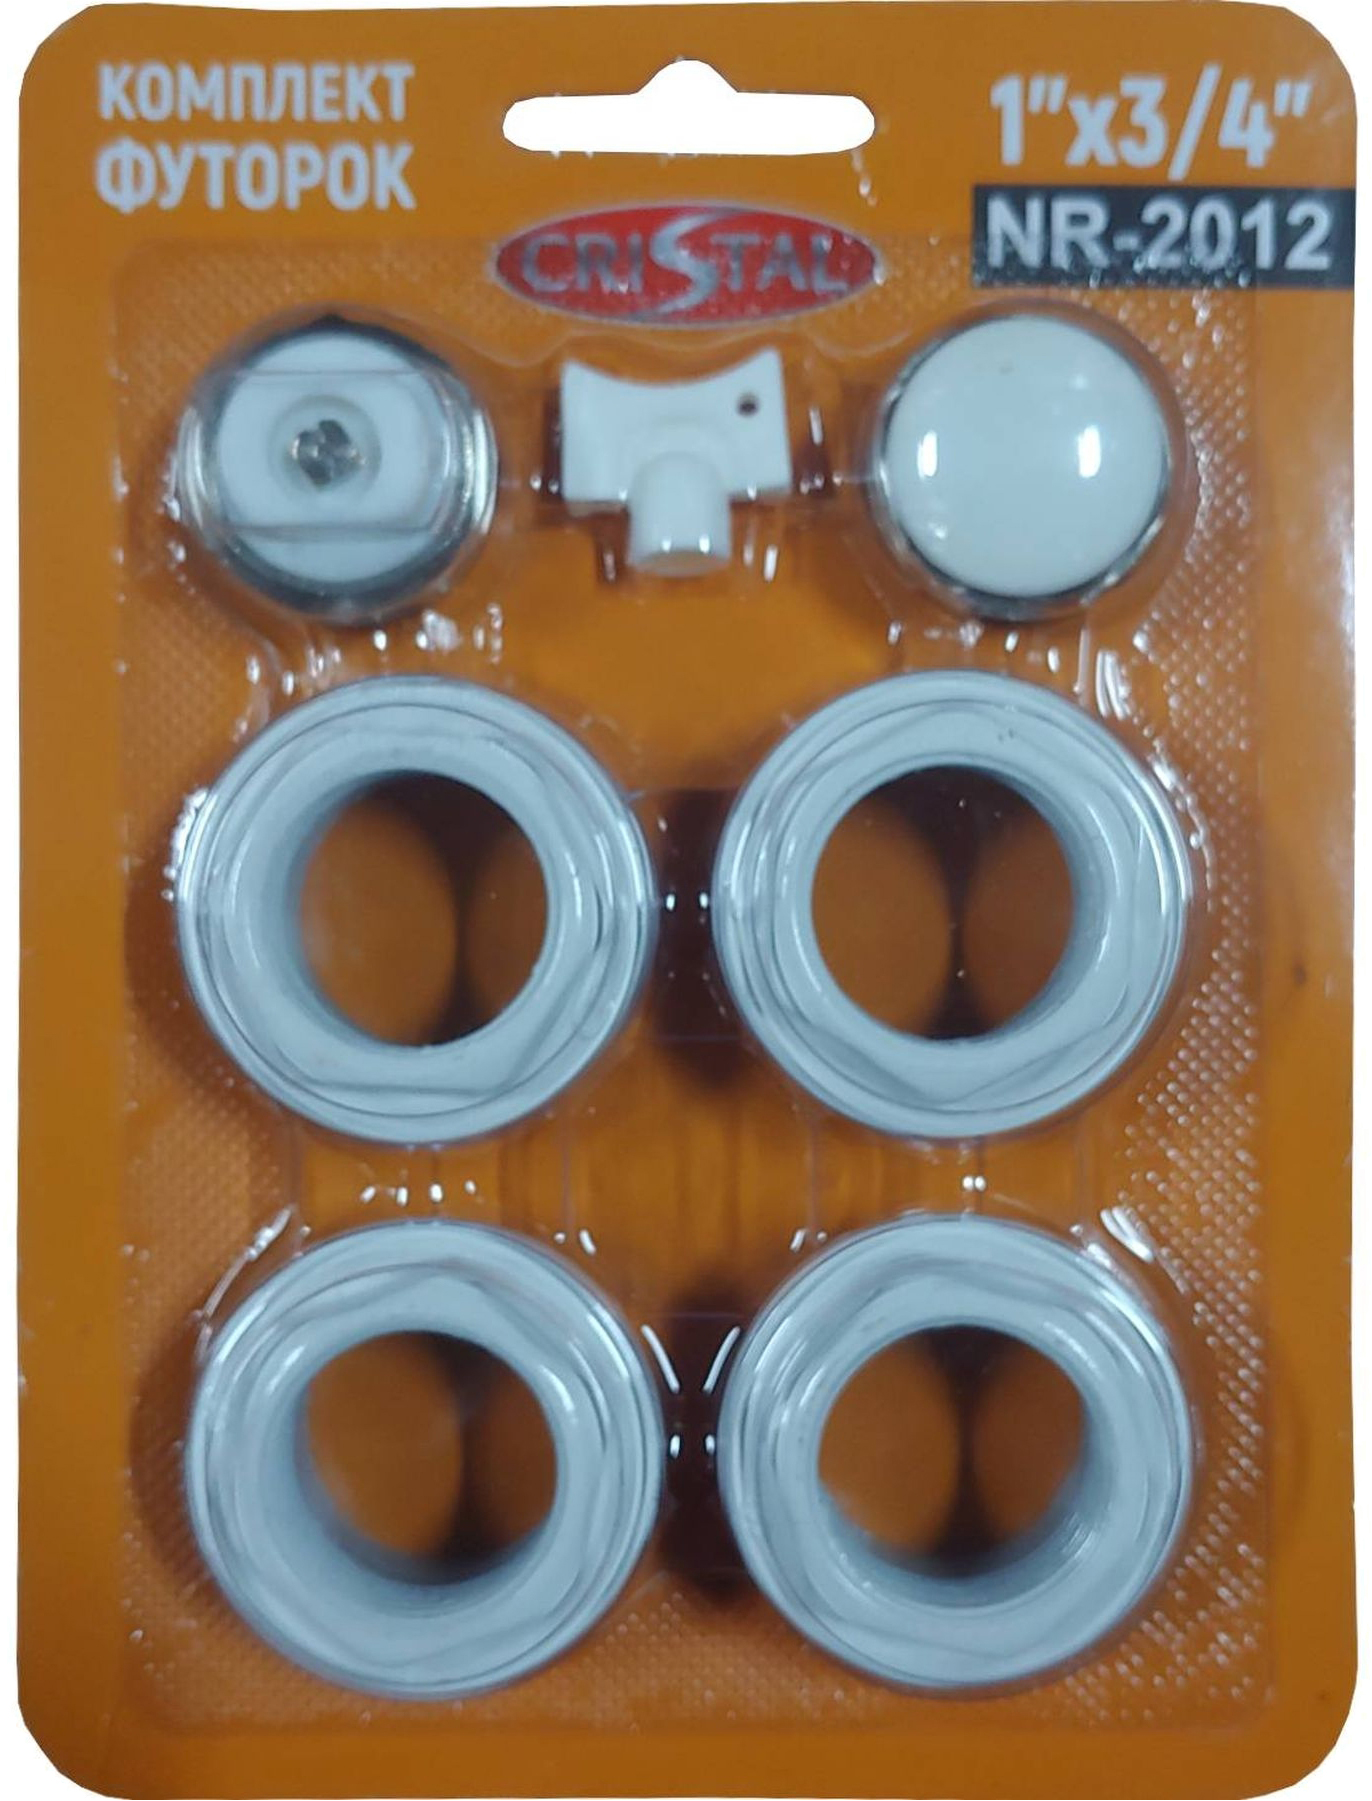 Комплект футорок секційного радіатора Cristal NR-2012 3/4″(HT 404)